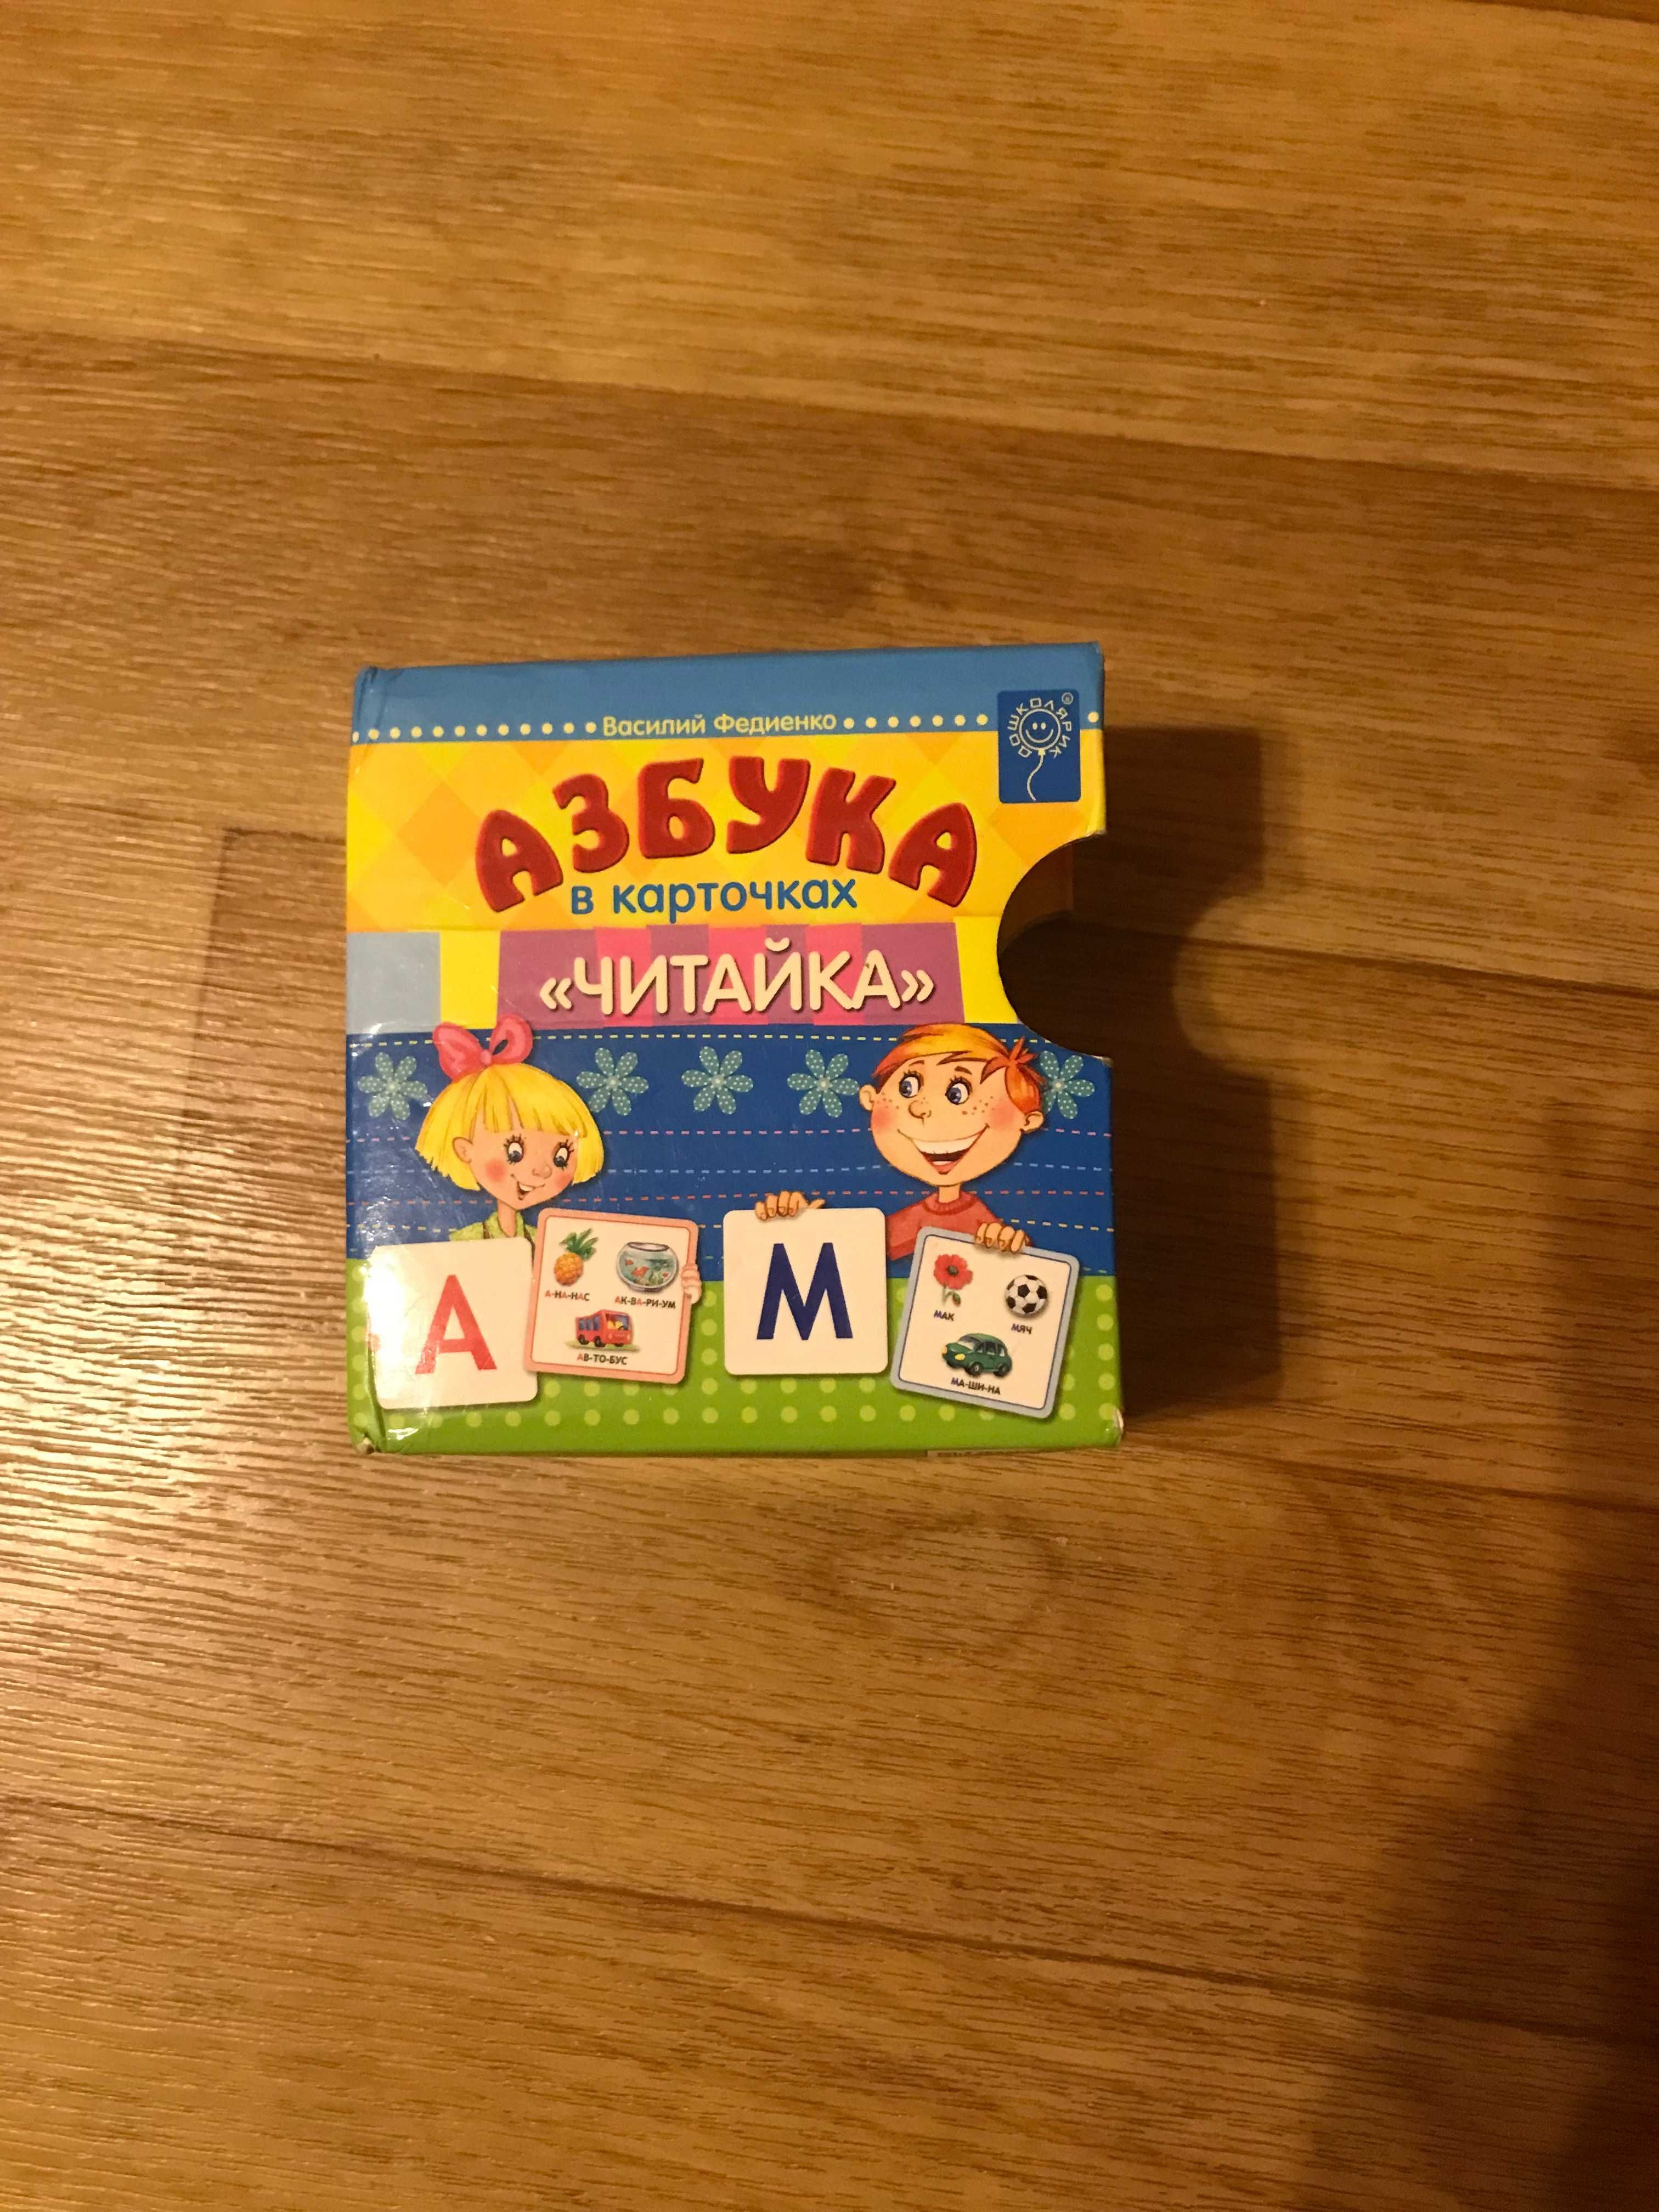 Азбука в карточках ЧИТАЙКА поможет детям изучить буквы.